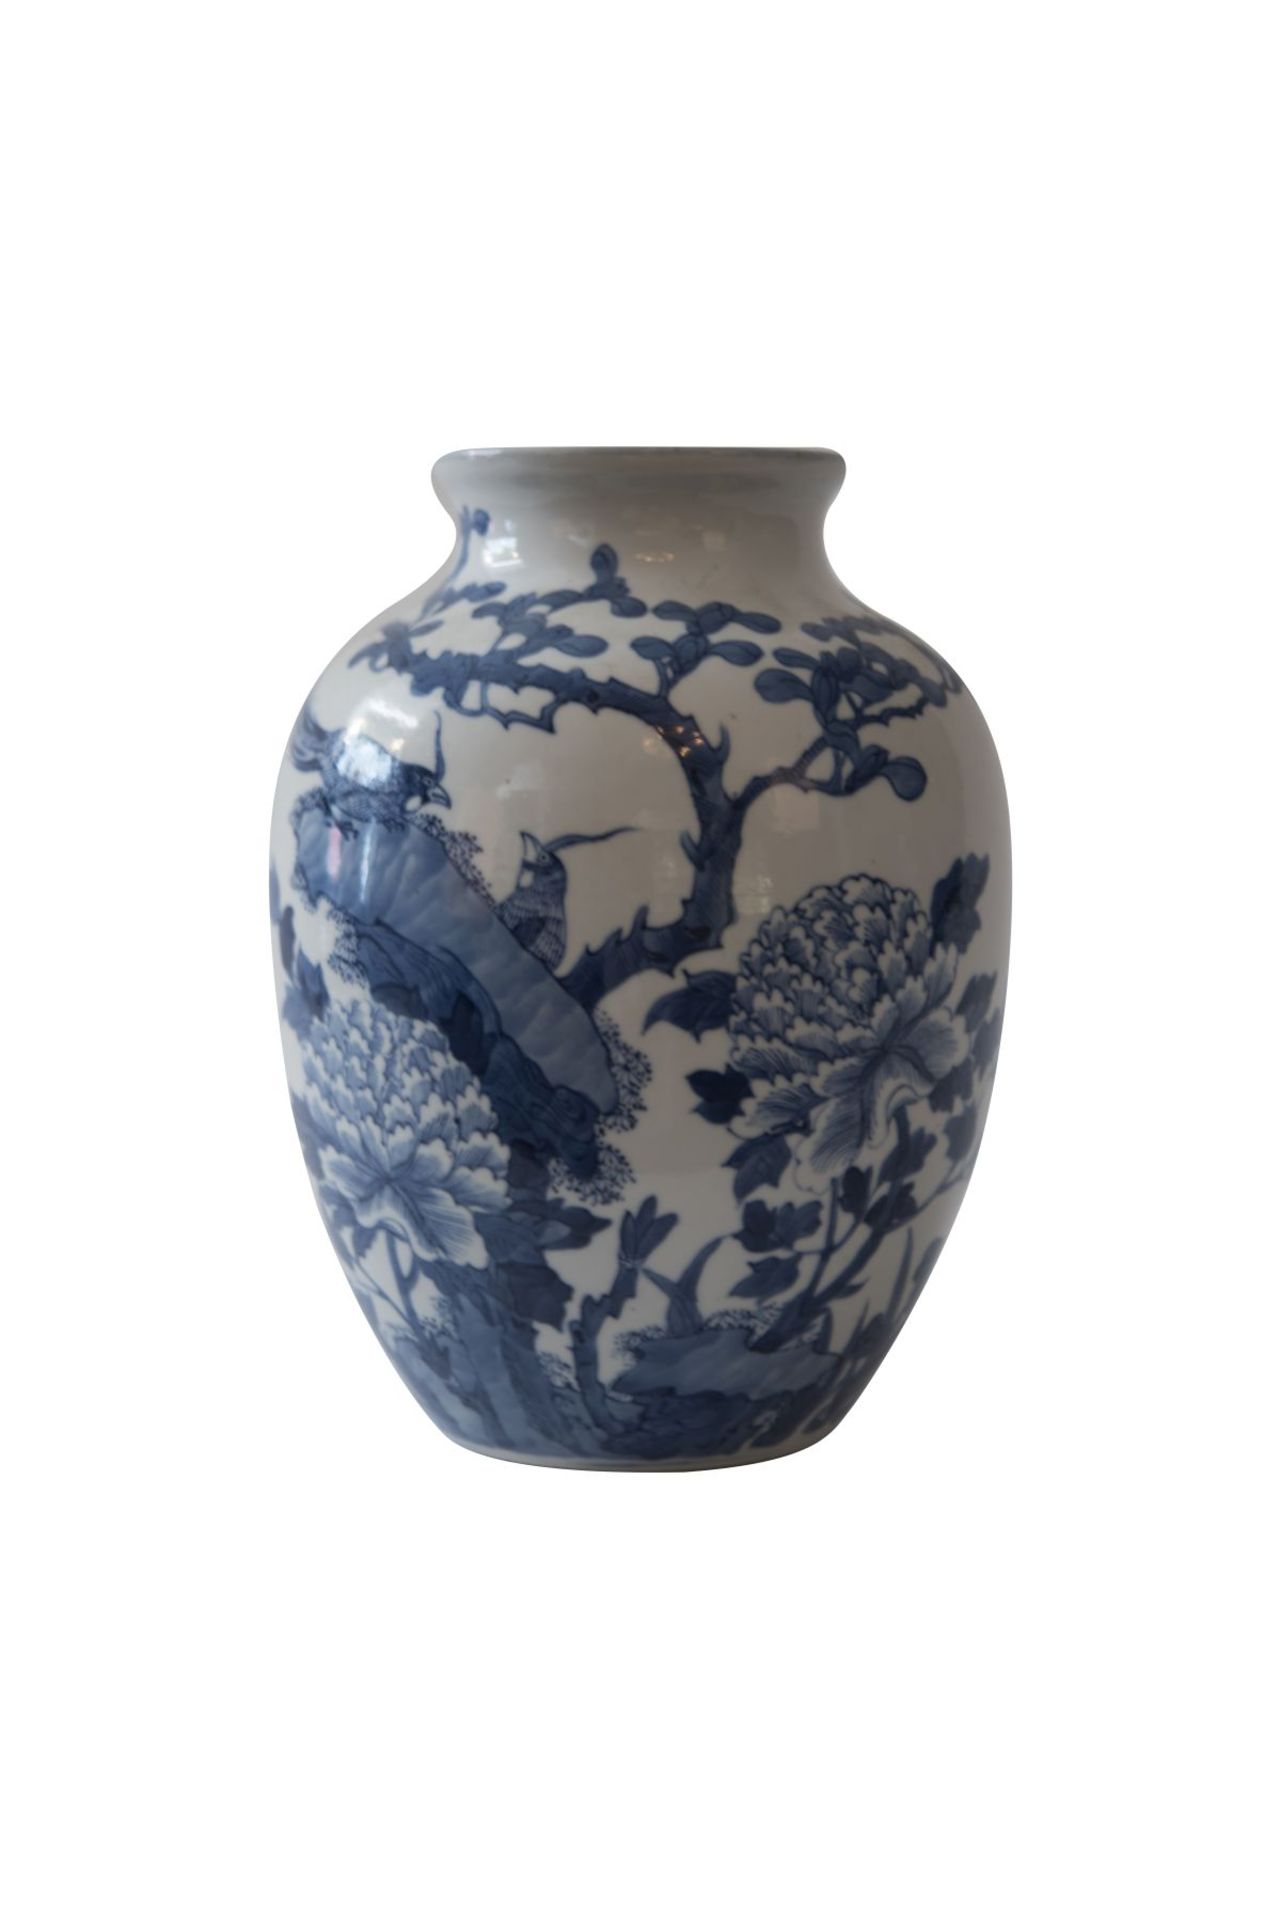 Blau-weiße VaseBlau-weiße Vase Baluster Form mit chinesischen Motiven, Provenienz: Aus dem